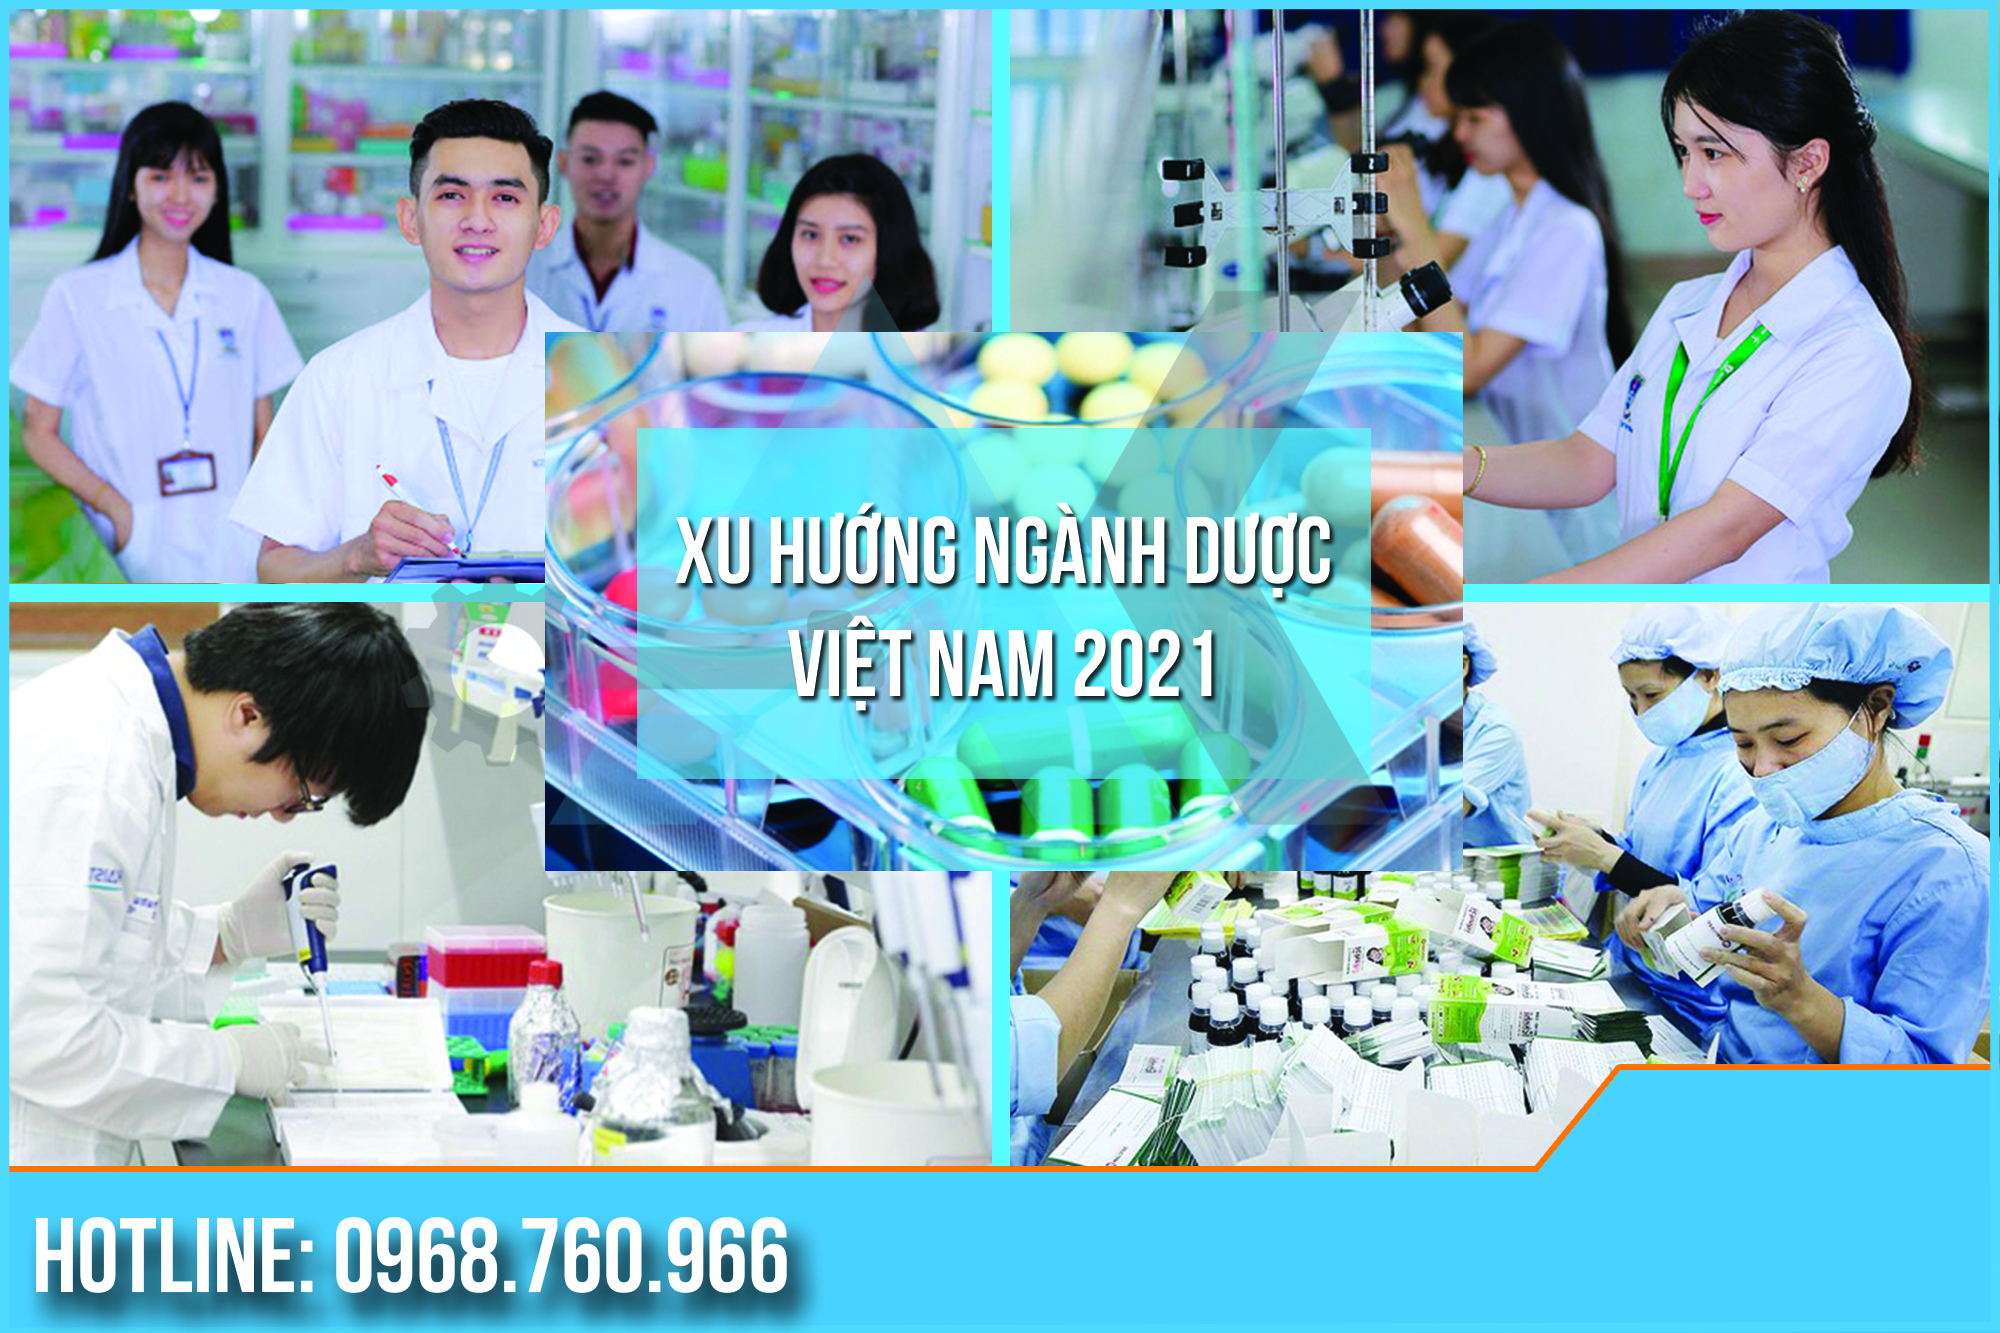 Ngành Dược của Việt Nam được dự đoán có xu hướng tiếp tục tăng vào năm 2021. Bài viết dưới đây tổng hợp các xu hướng ngắn hạn và dài hạn của ngành Dược trong những năm tới.